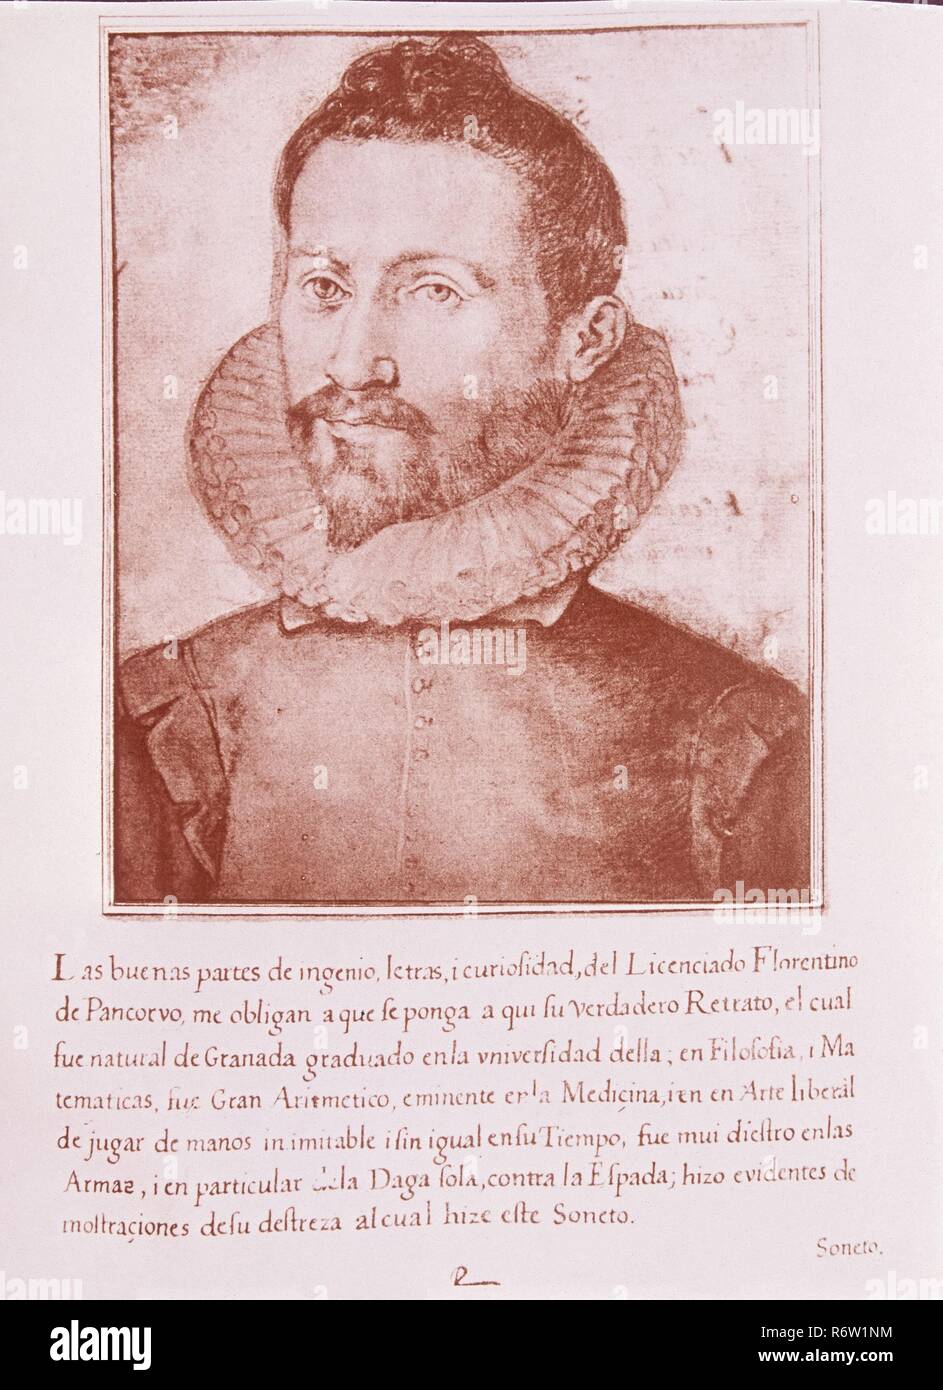 FLORENTINO DE PANCORVO - LIBRO DE RETRATOS DE ILUSTRES Y MEMORABLES VARONES - 1599. Author: PACHECO, FRANCISCO. Location: BIBLIOTECA NACIONAL-COLECCION. MADRID. SPAIN. Stock Photo